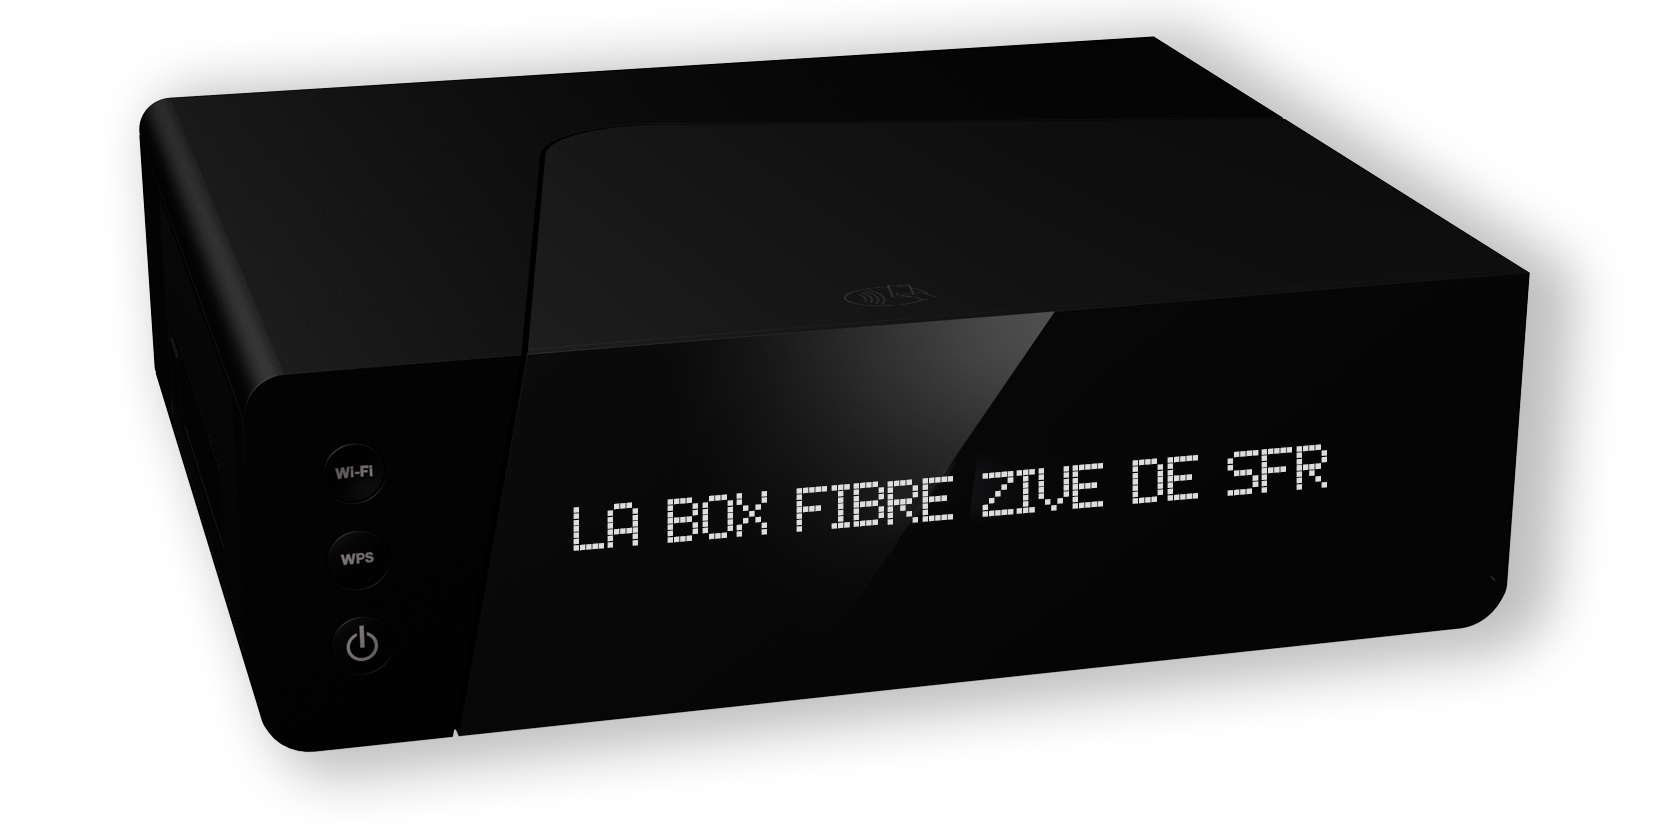 La nouvelle Box Zive de SFR en détails